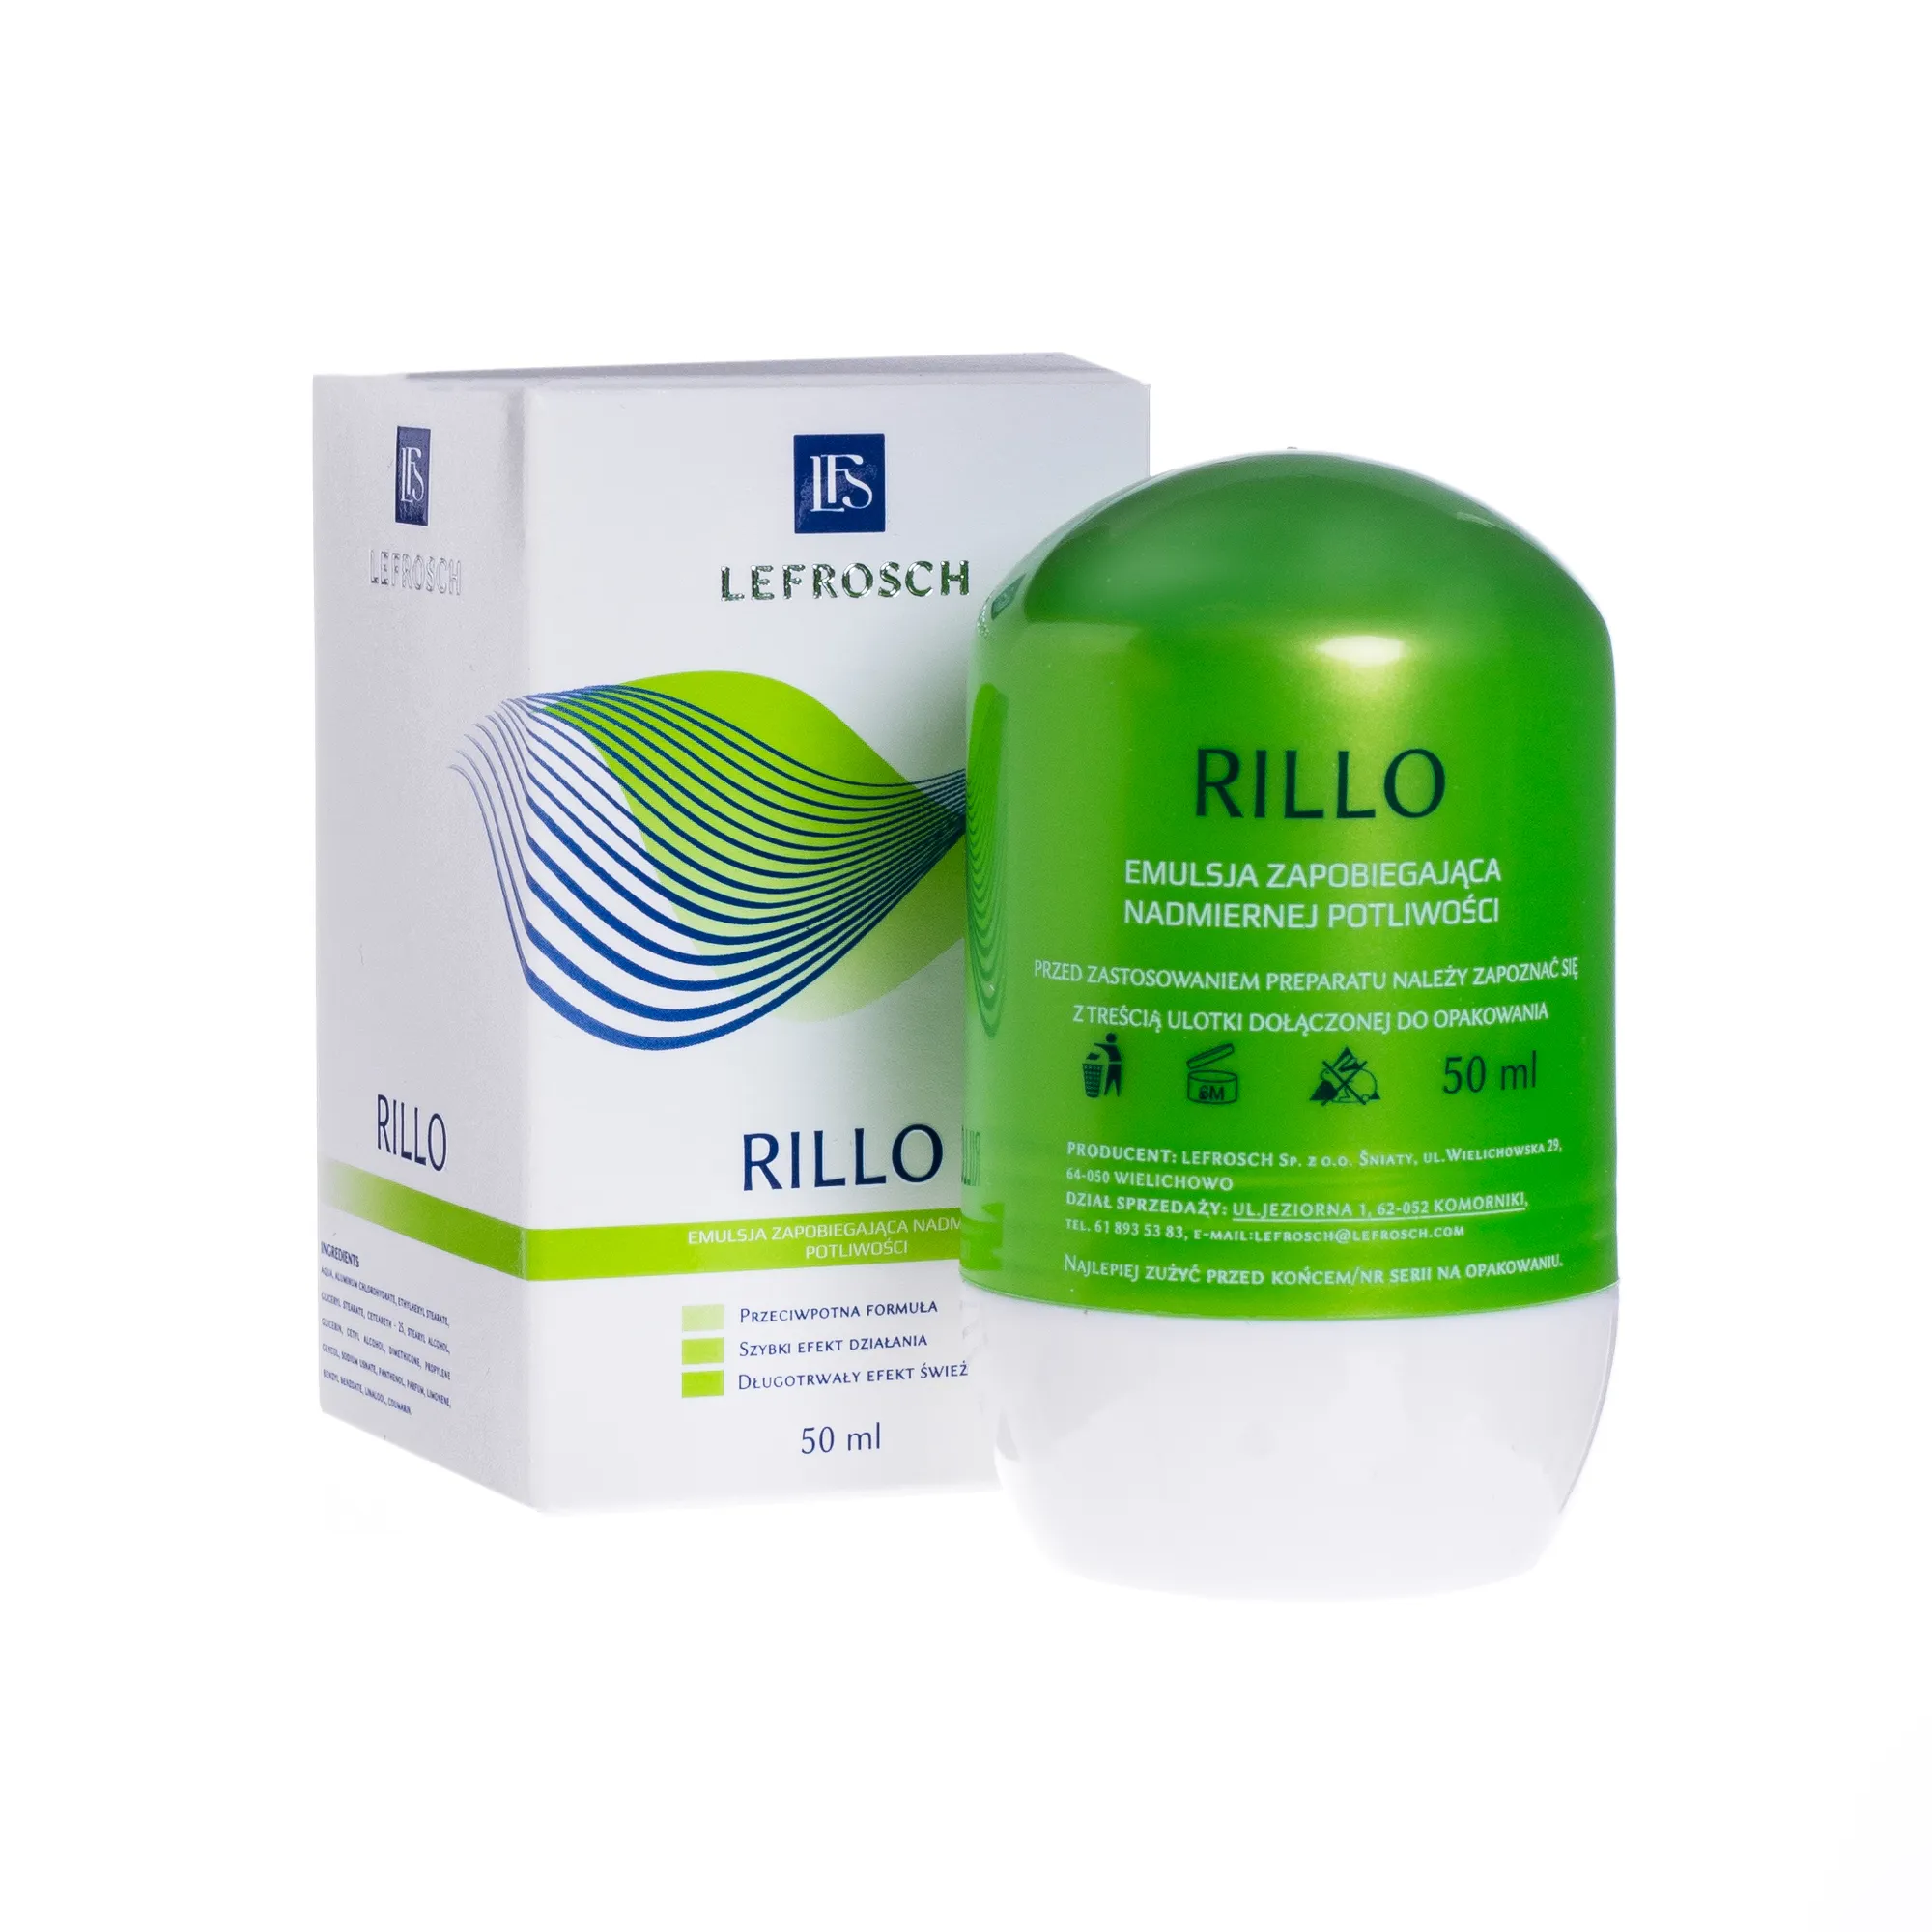 Lefrosch Rillo, emulsja zapobiegająca nadmiernej potliwości, 50 ml